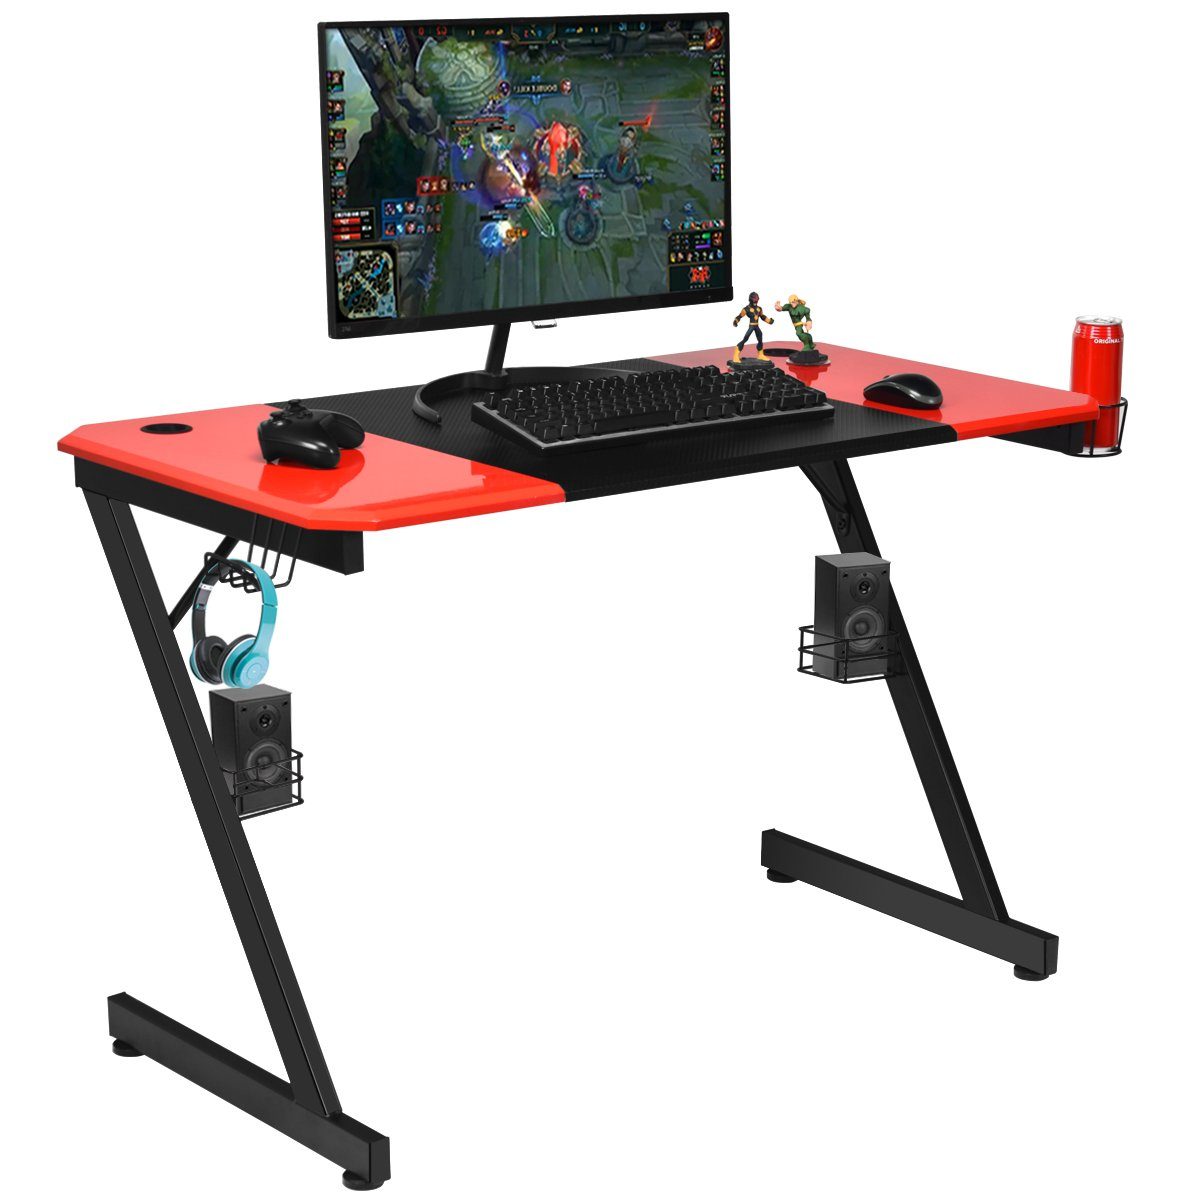 COSTWAY Gamingtisch, 120cm, & Becherhalter, 2 Ständern mit Haken Rot praktischen + Schwarz